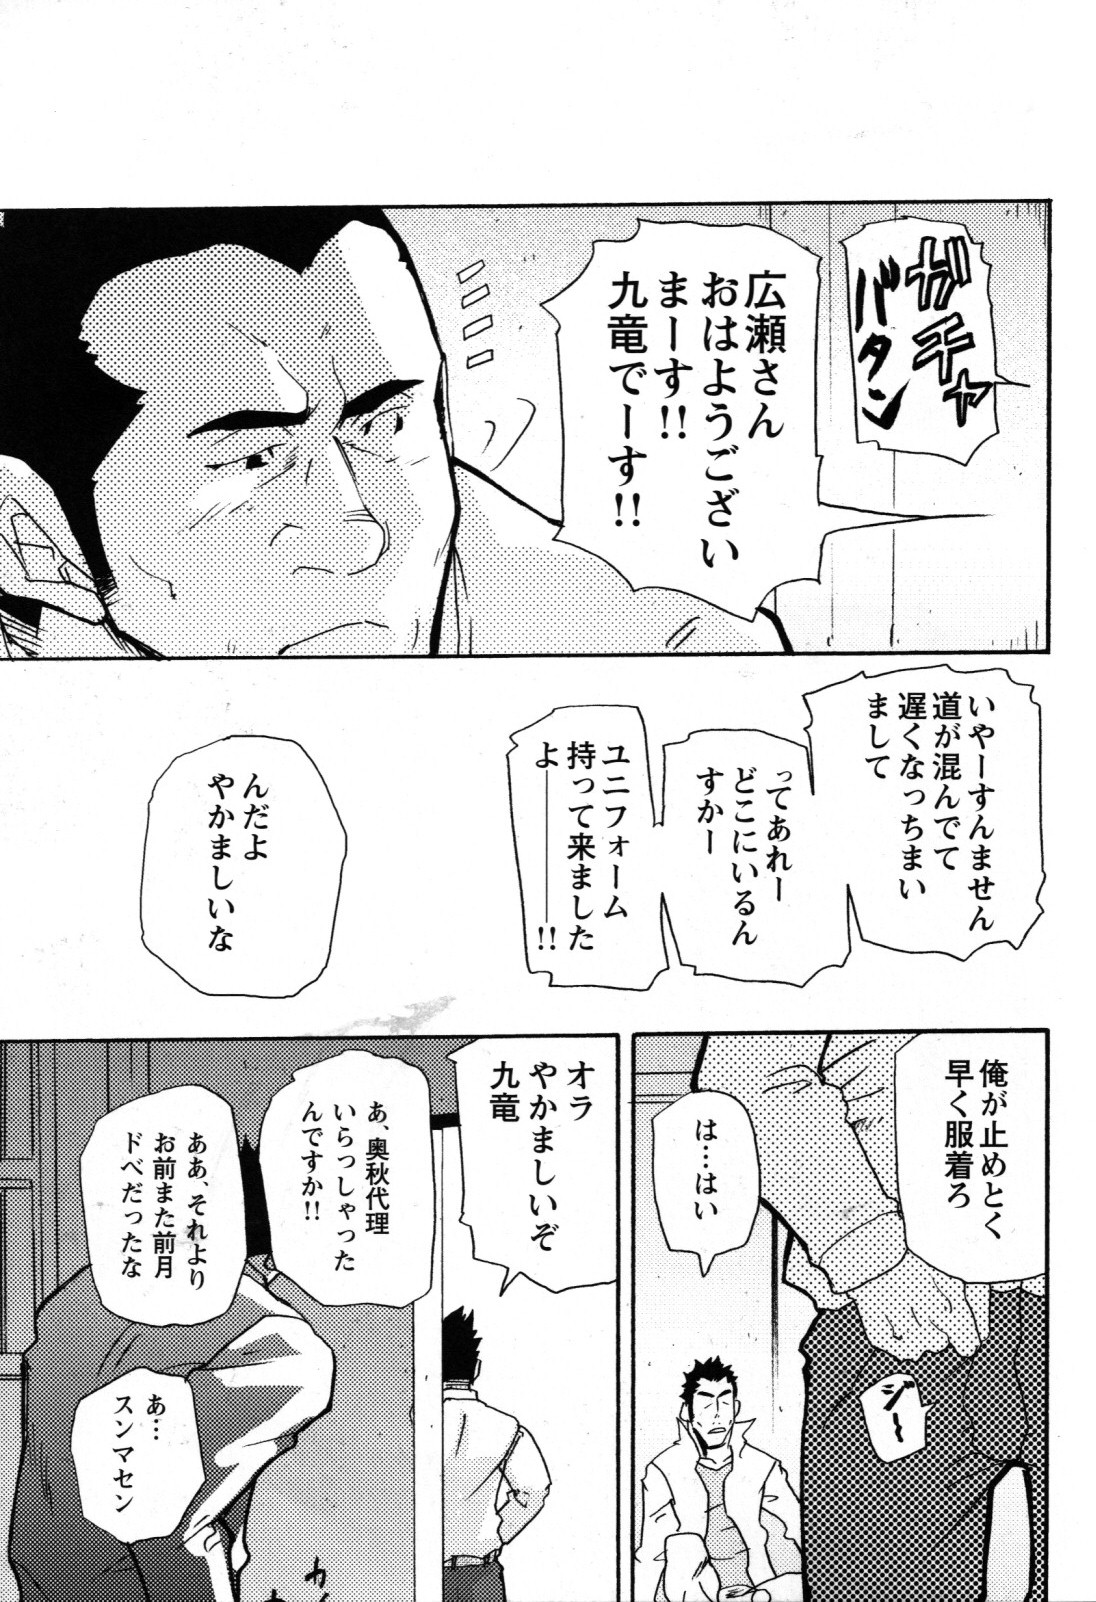 [松武] 新米銀行員 九竜光司の受難 第1-13話